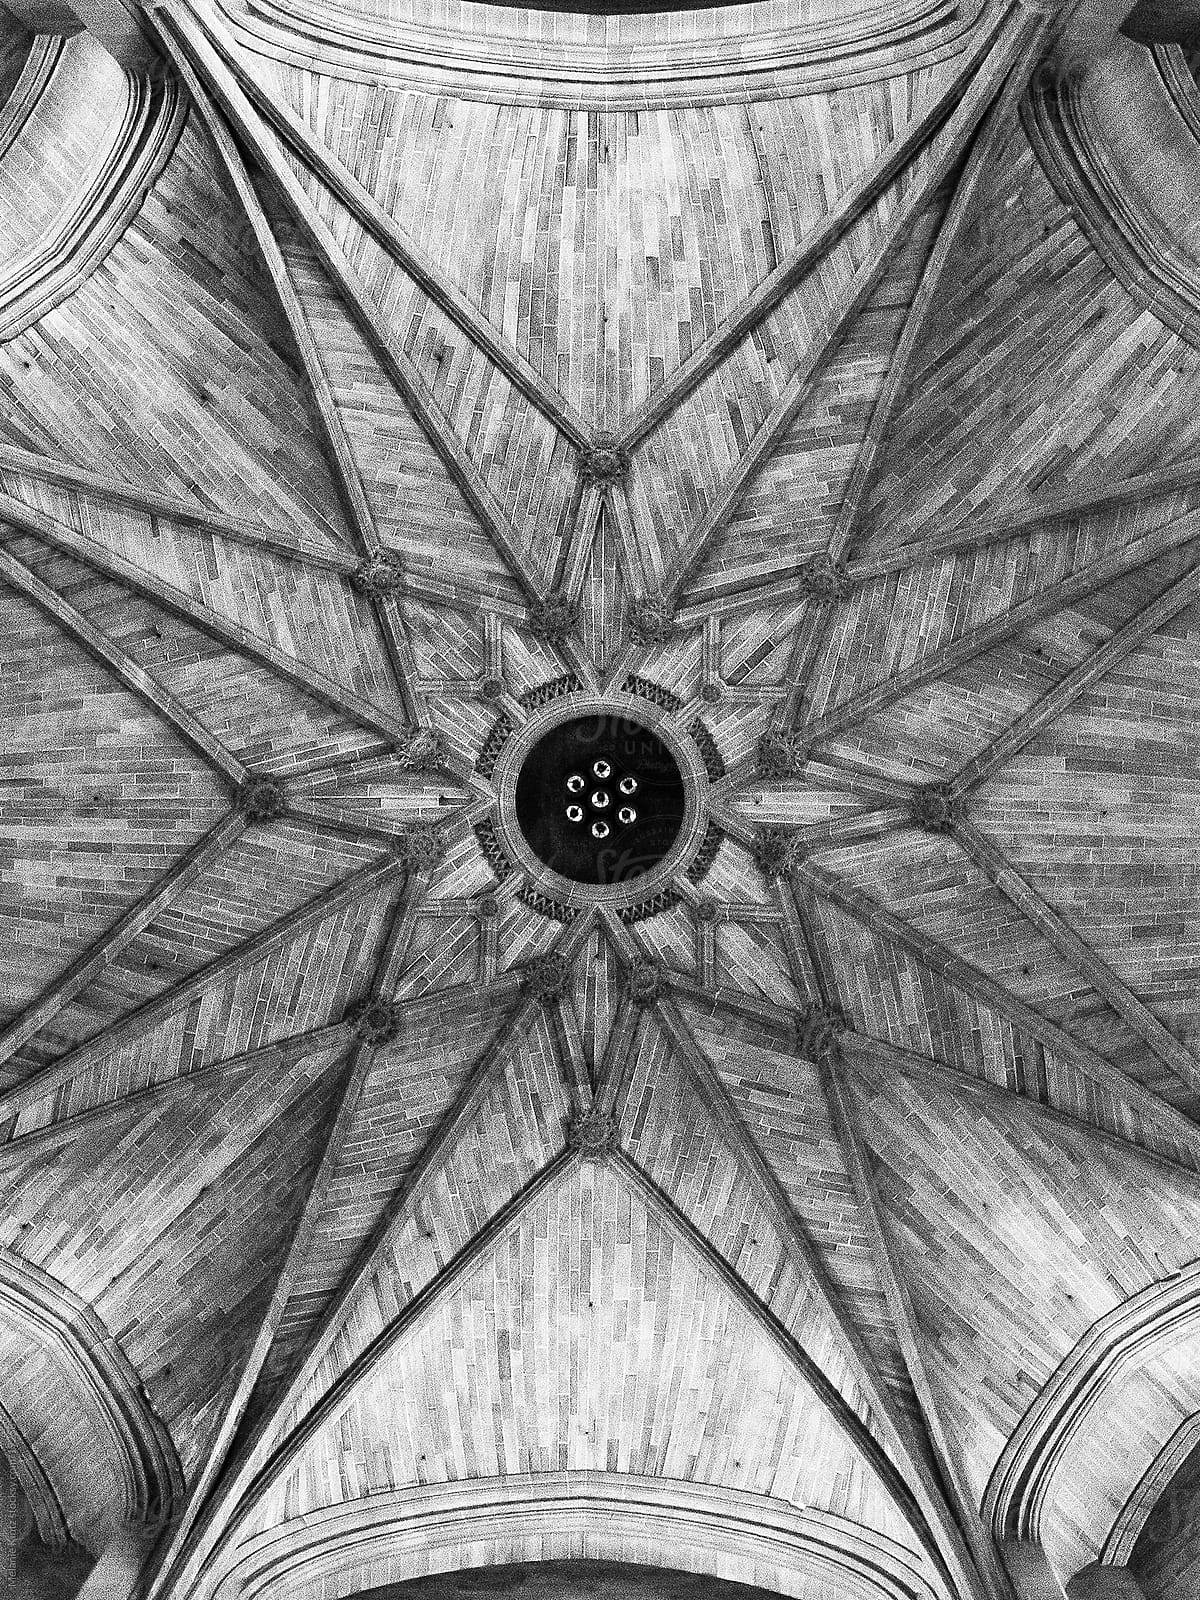 Church ceiling detail, monochrome